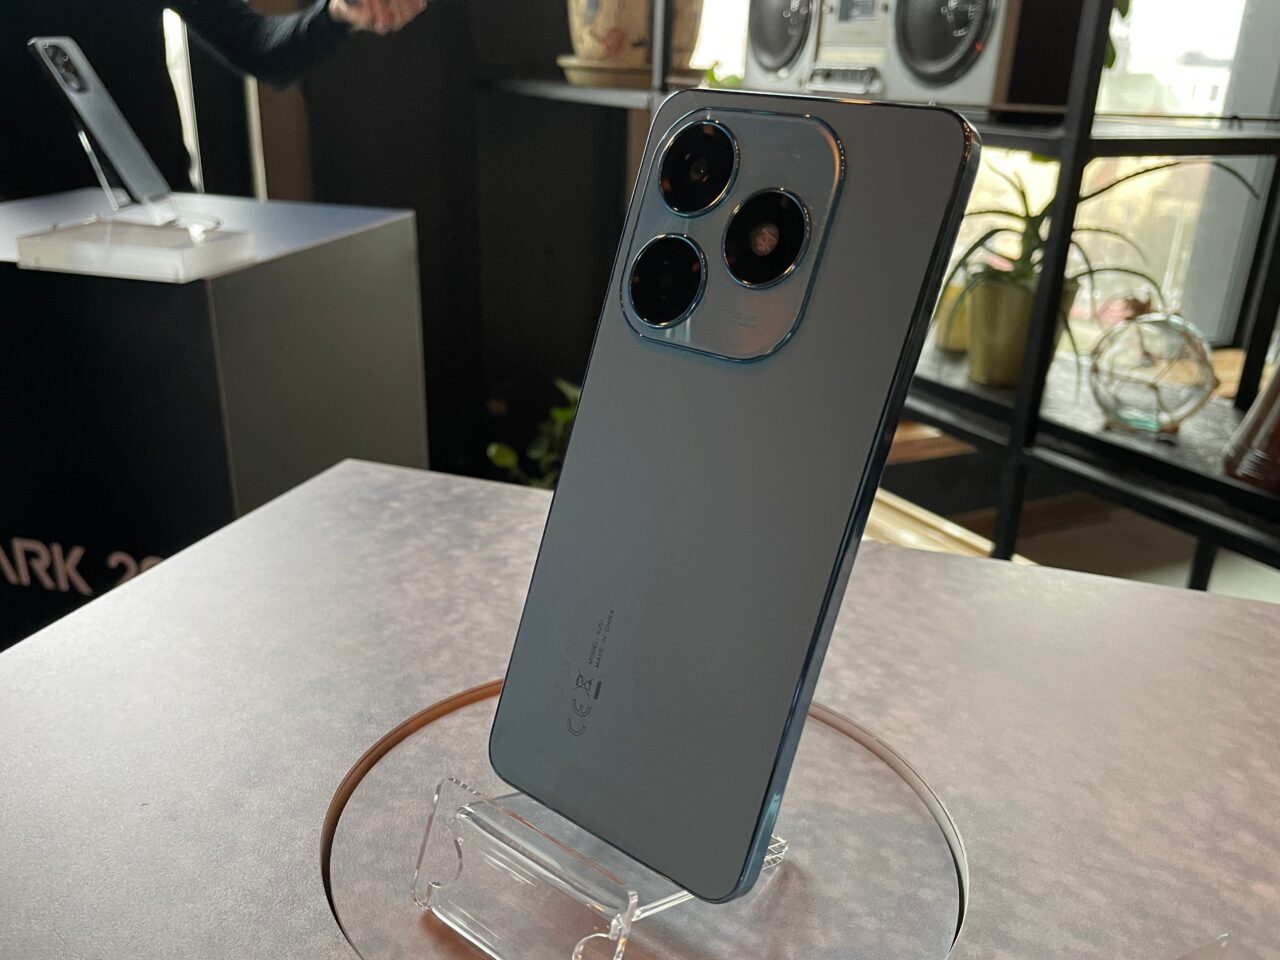 Smartfon tecno spark 20 koloru srebrnego z potrójnym aparatem fotograficznym, wystawiony na stojaku, w jasno oświetlonym wnętrzu.